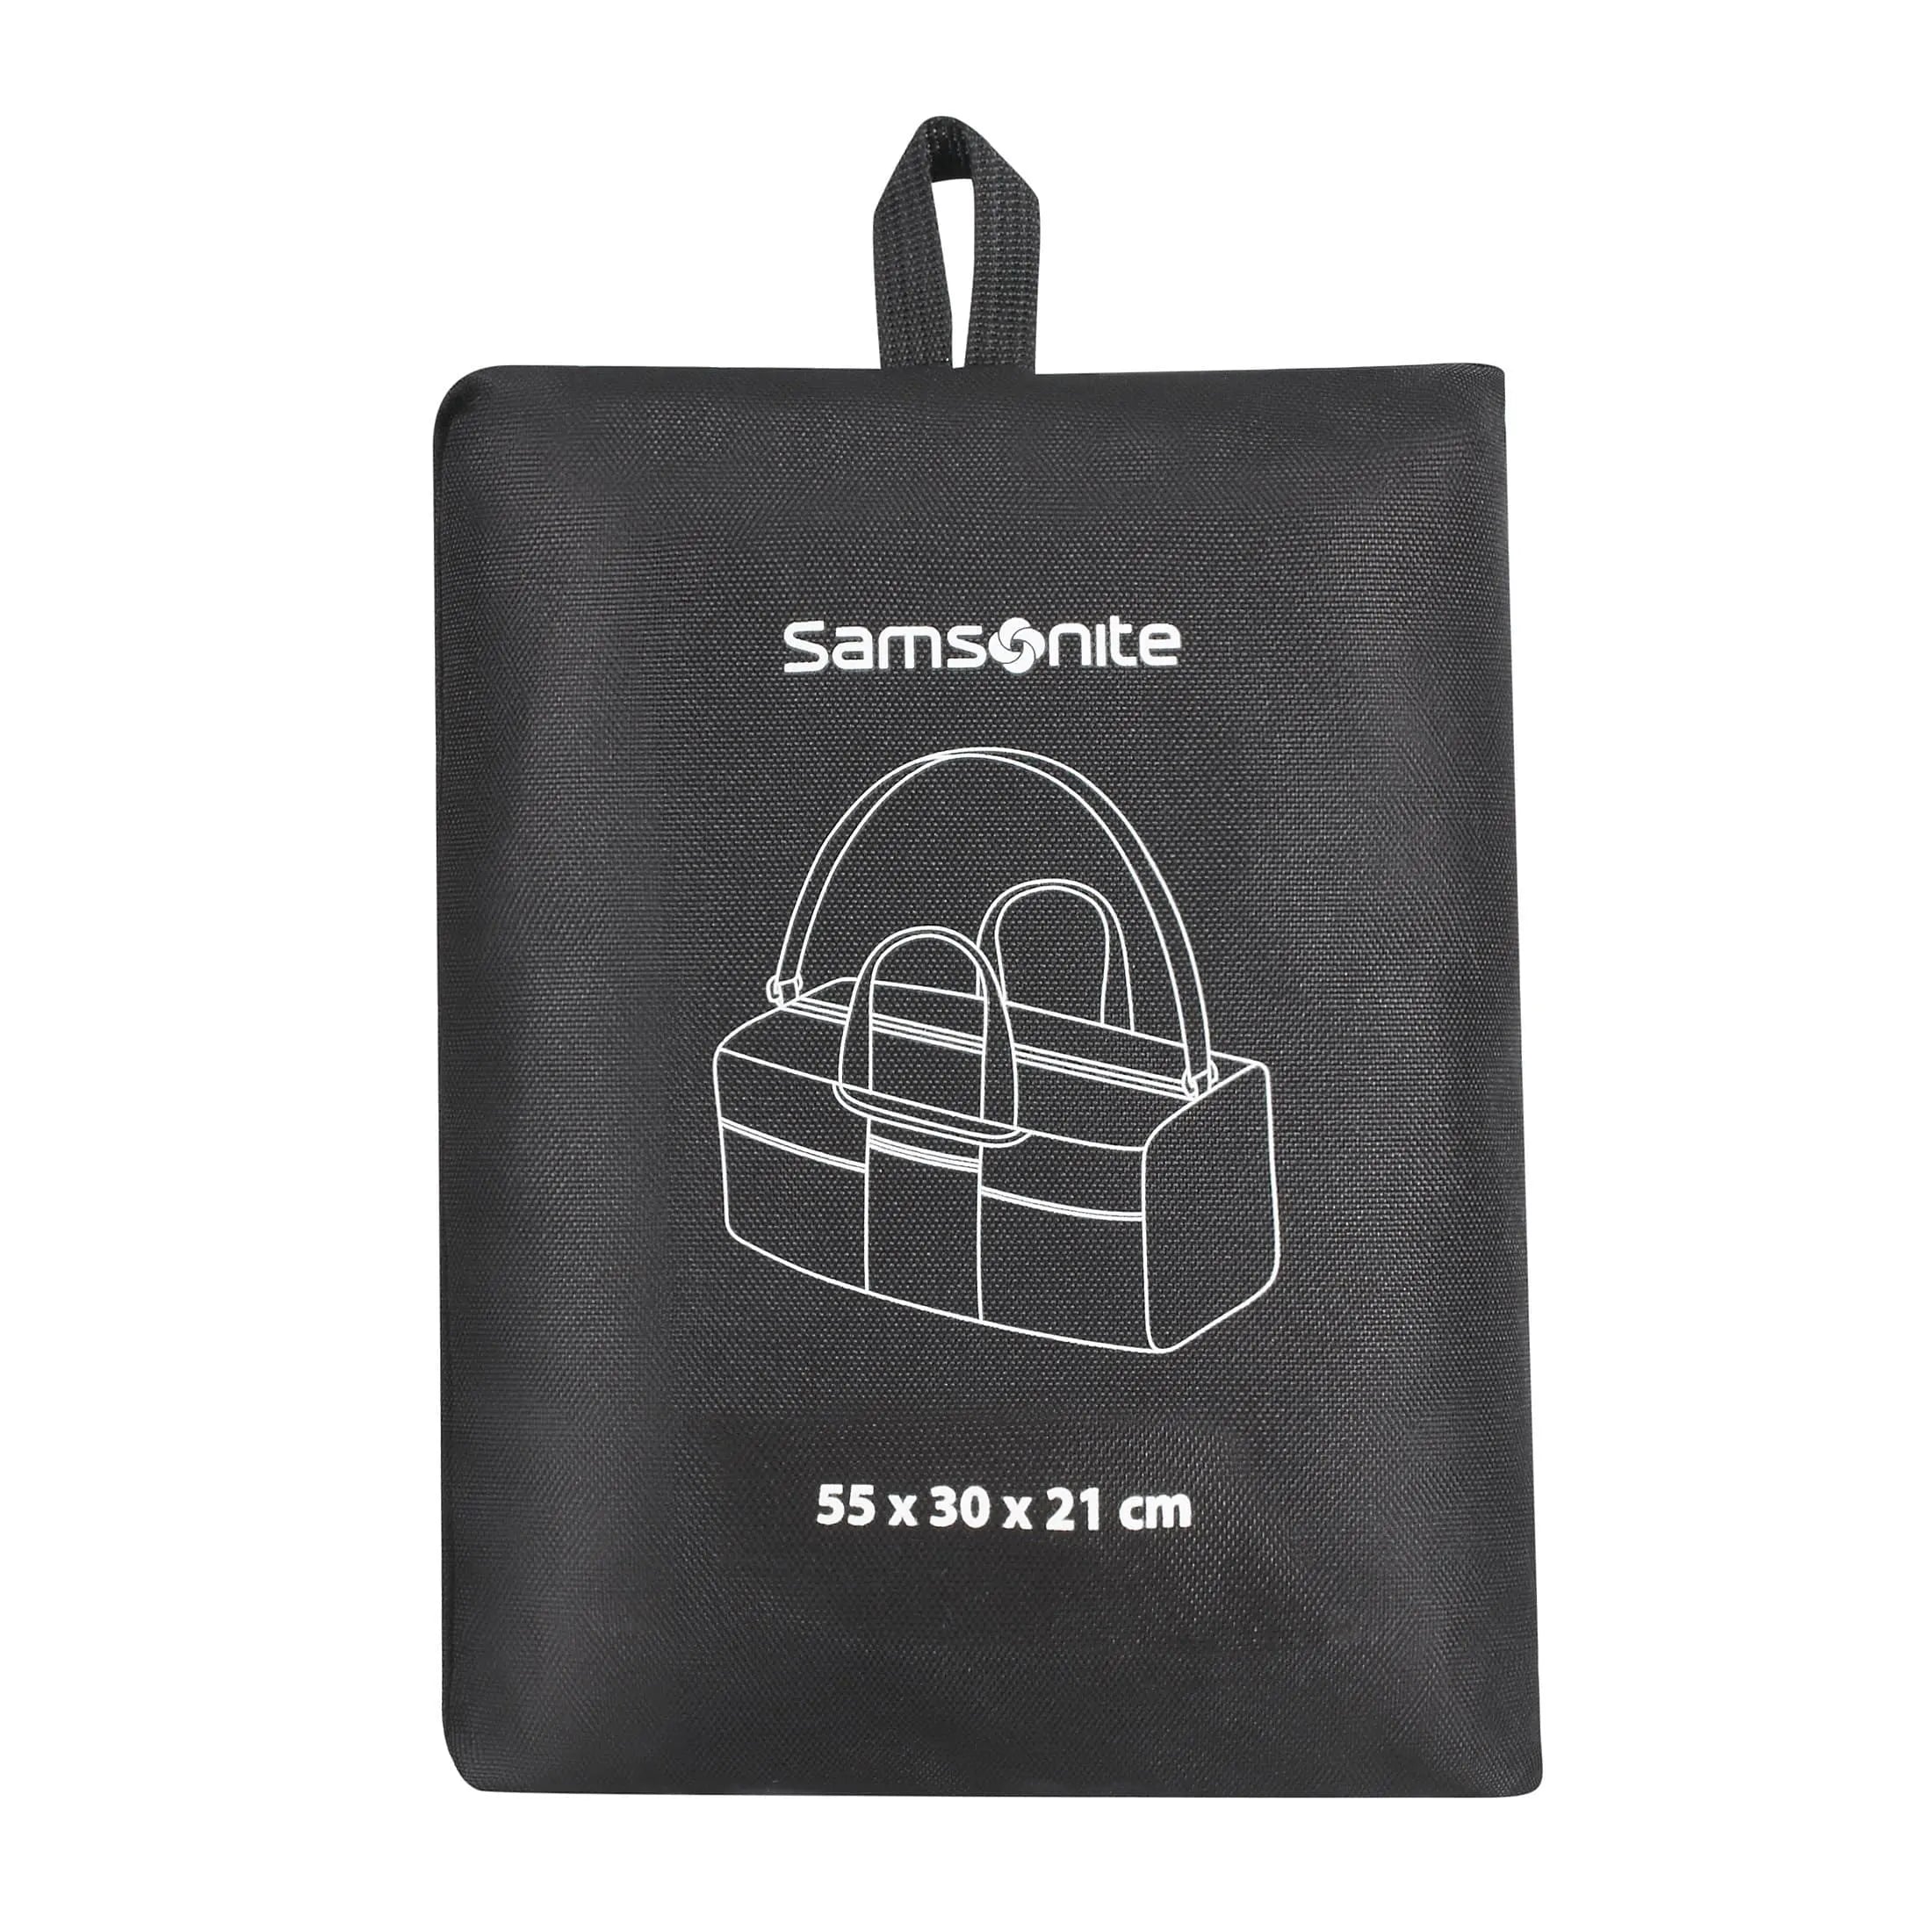 Samsonite Travel Accessories sac de voyage pliable 55 cm - bleu nuit